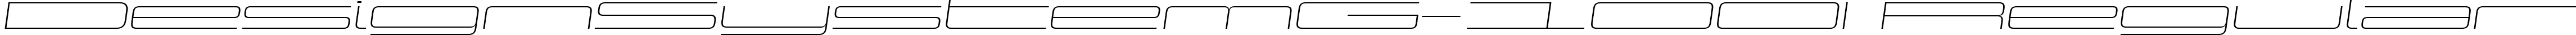 DesignSystemG-100I Regular font - Design System G 100 Italic.ttf